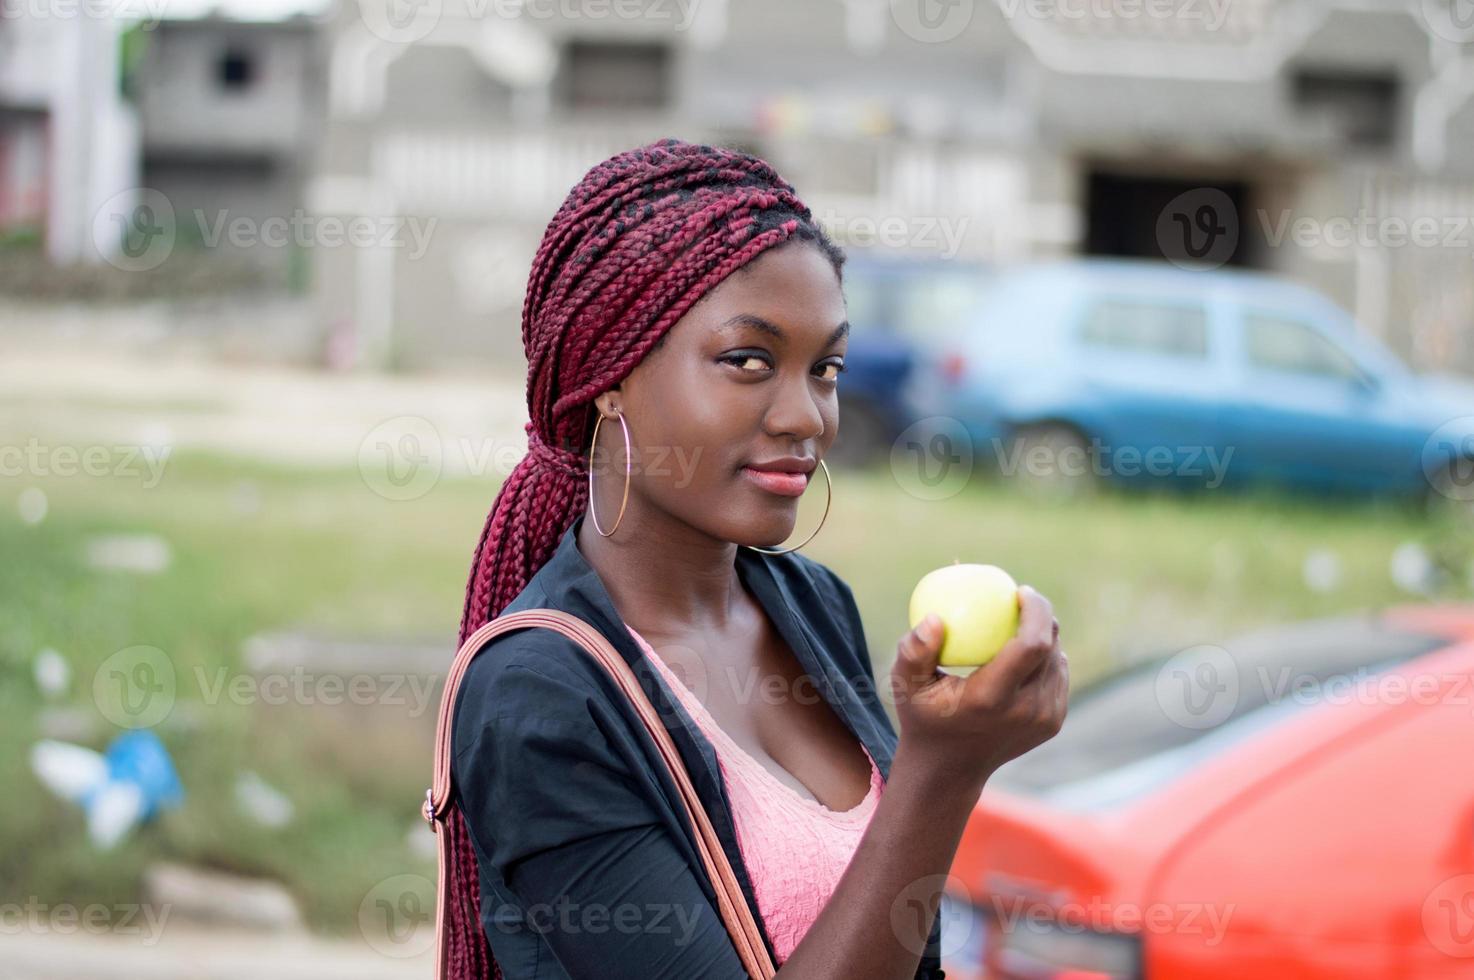 jovem segurando uma maçã, olhando para a câmera. foto